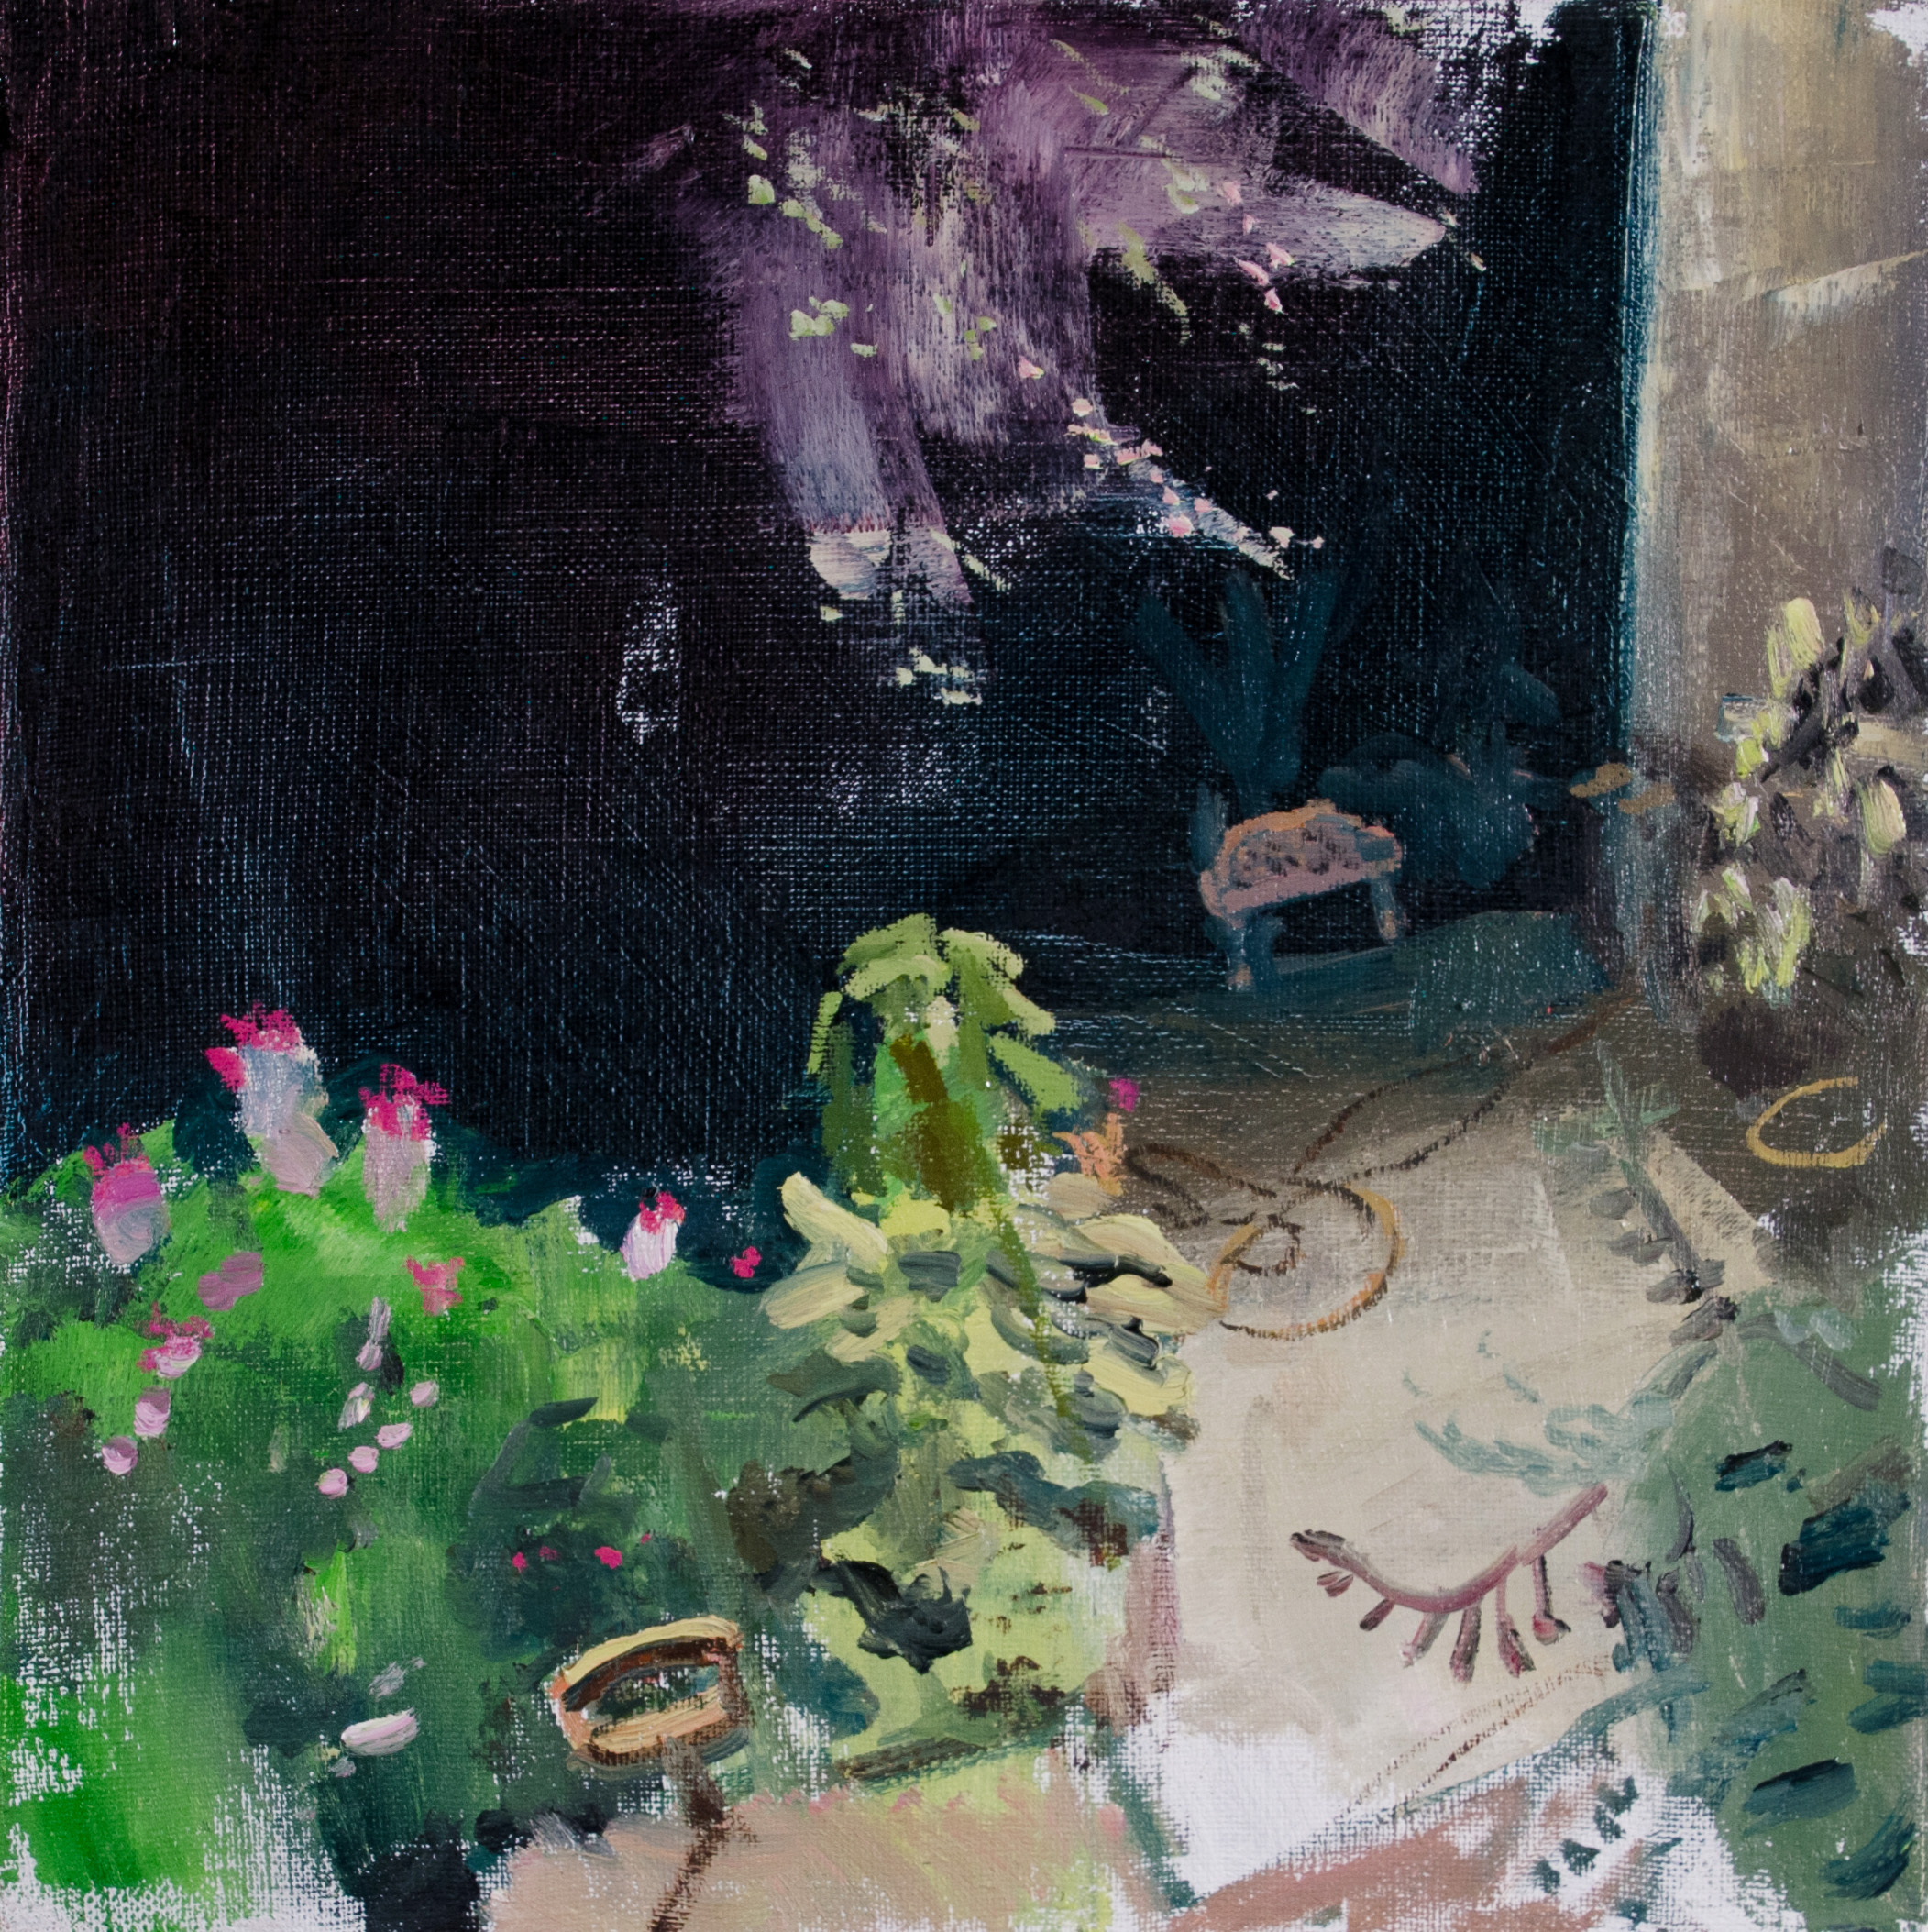 Crabapple, Night, 14 x 14", Oil on linen, 2015